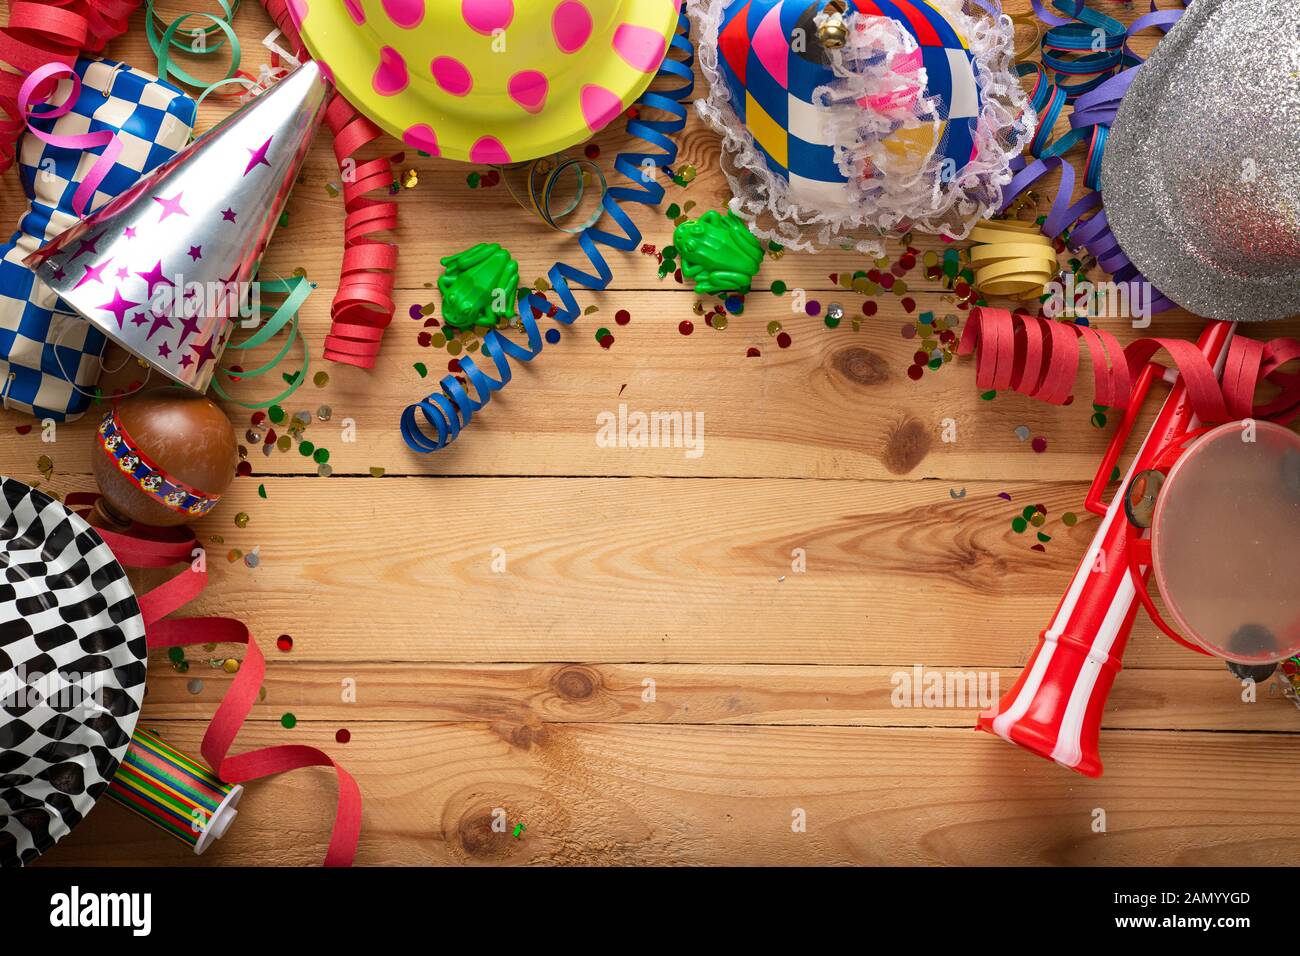 Arrière-plan de carnaval sur une surface en bois. Masques, chapeaux, serpentins, confettis serpentins Banque D'Images